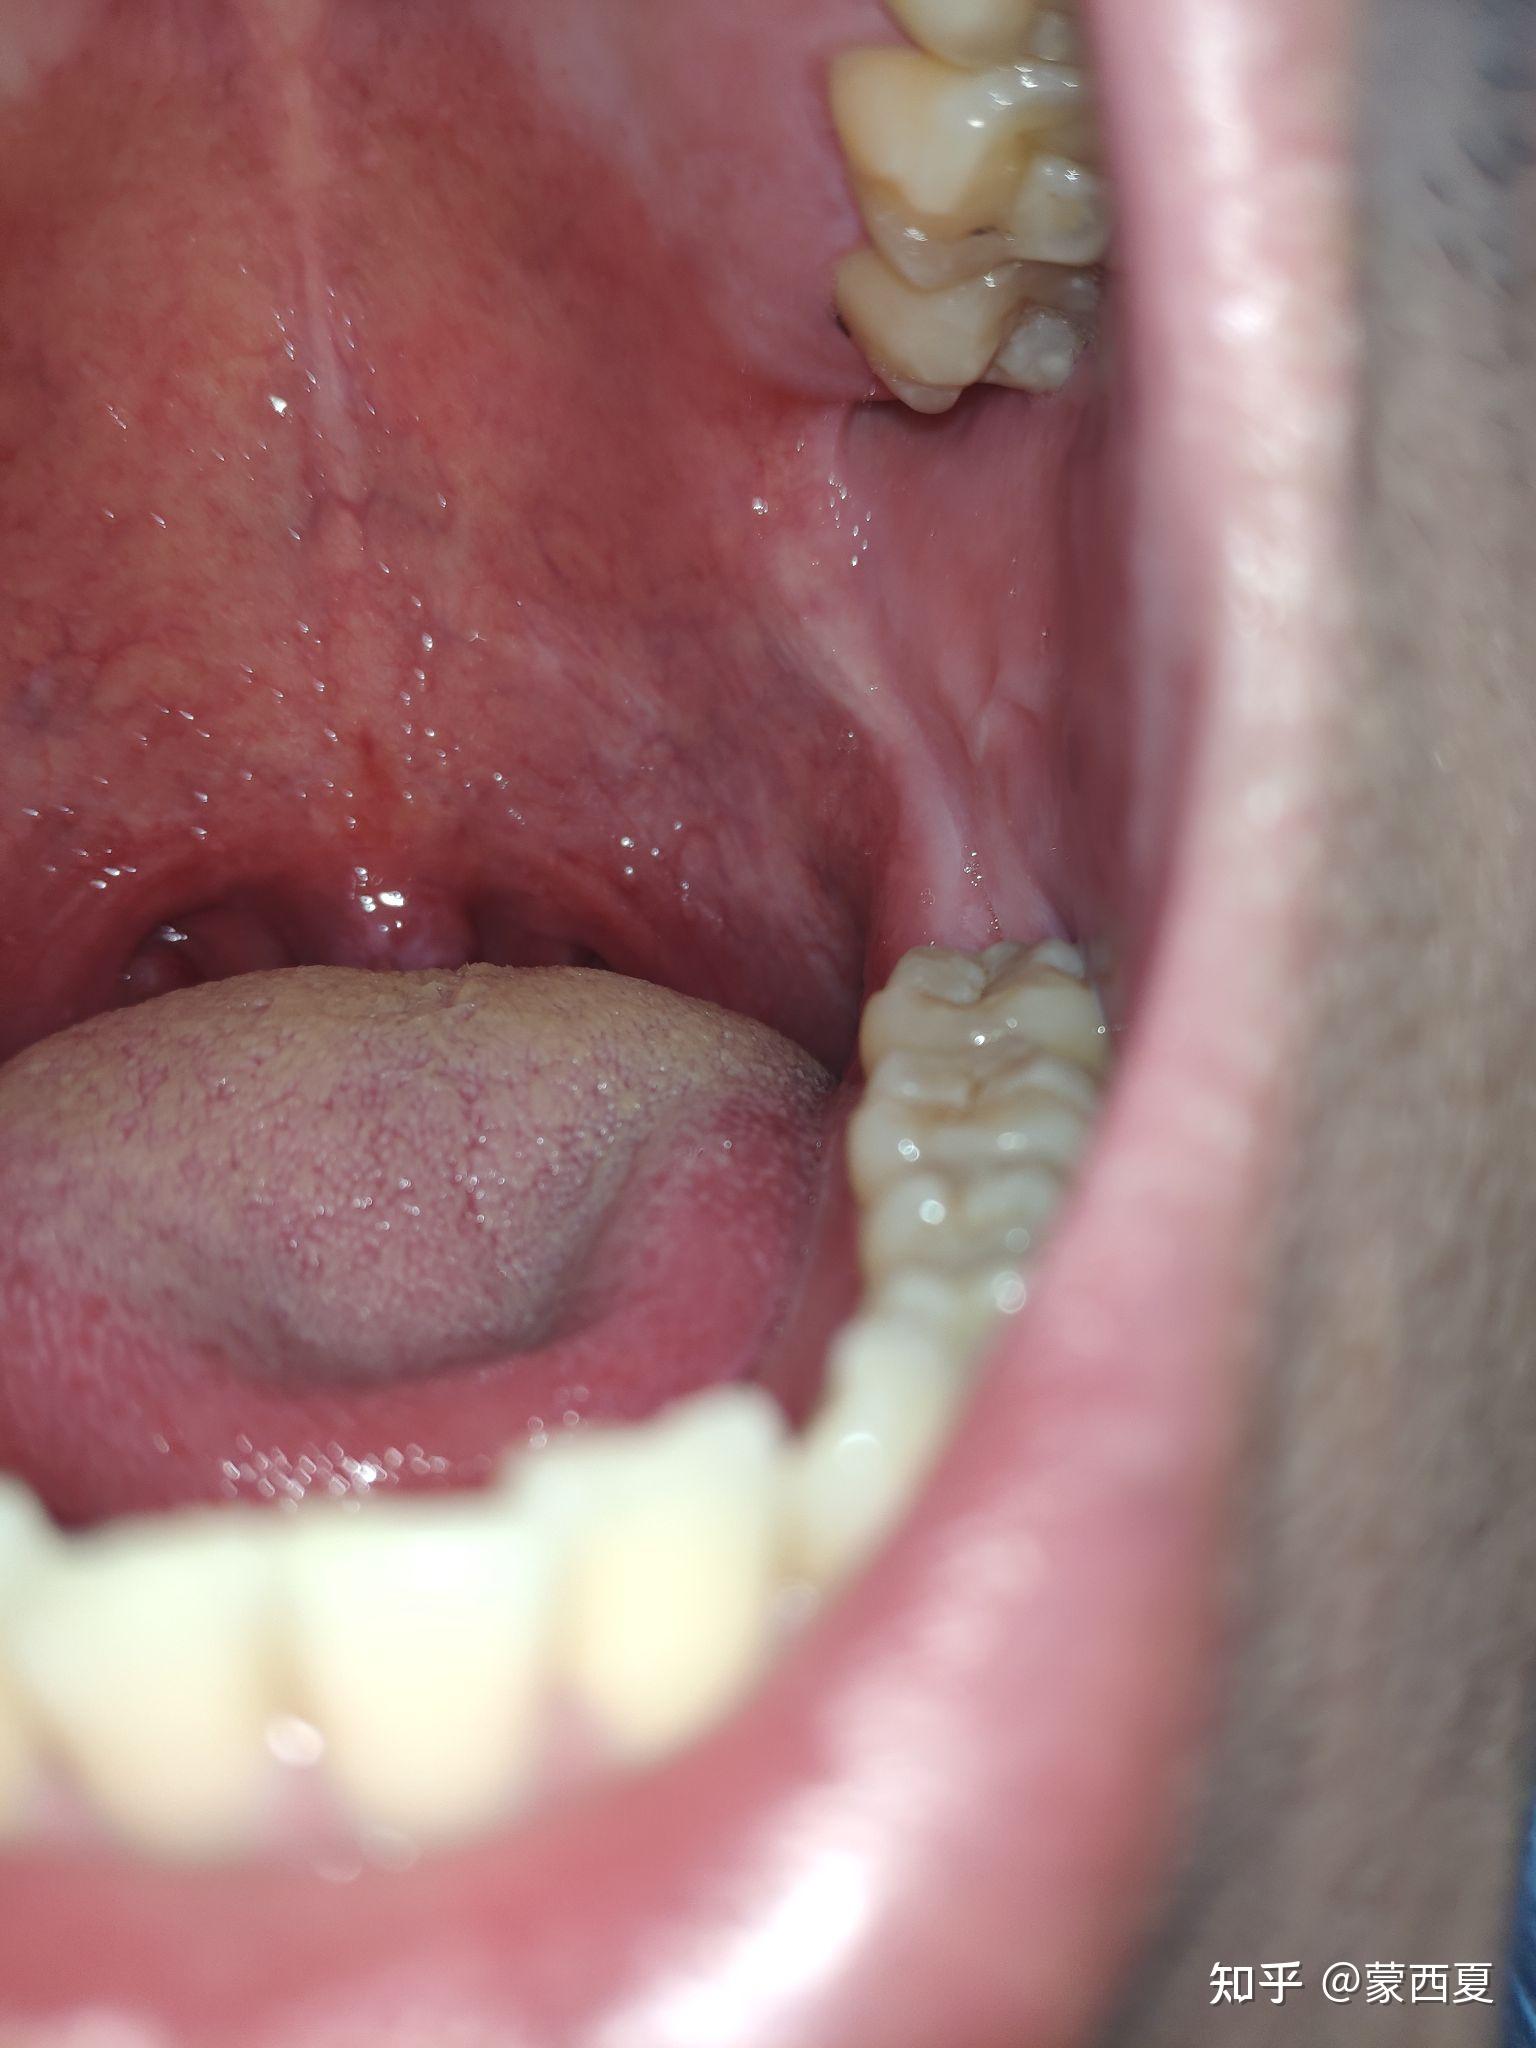 正常悬雍垂图片,正常喉咙小舌头图片(2) - 伤感说说吧